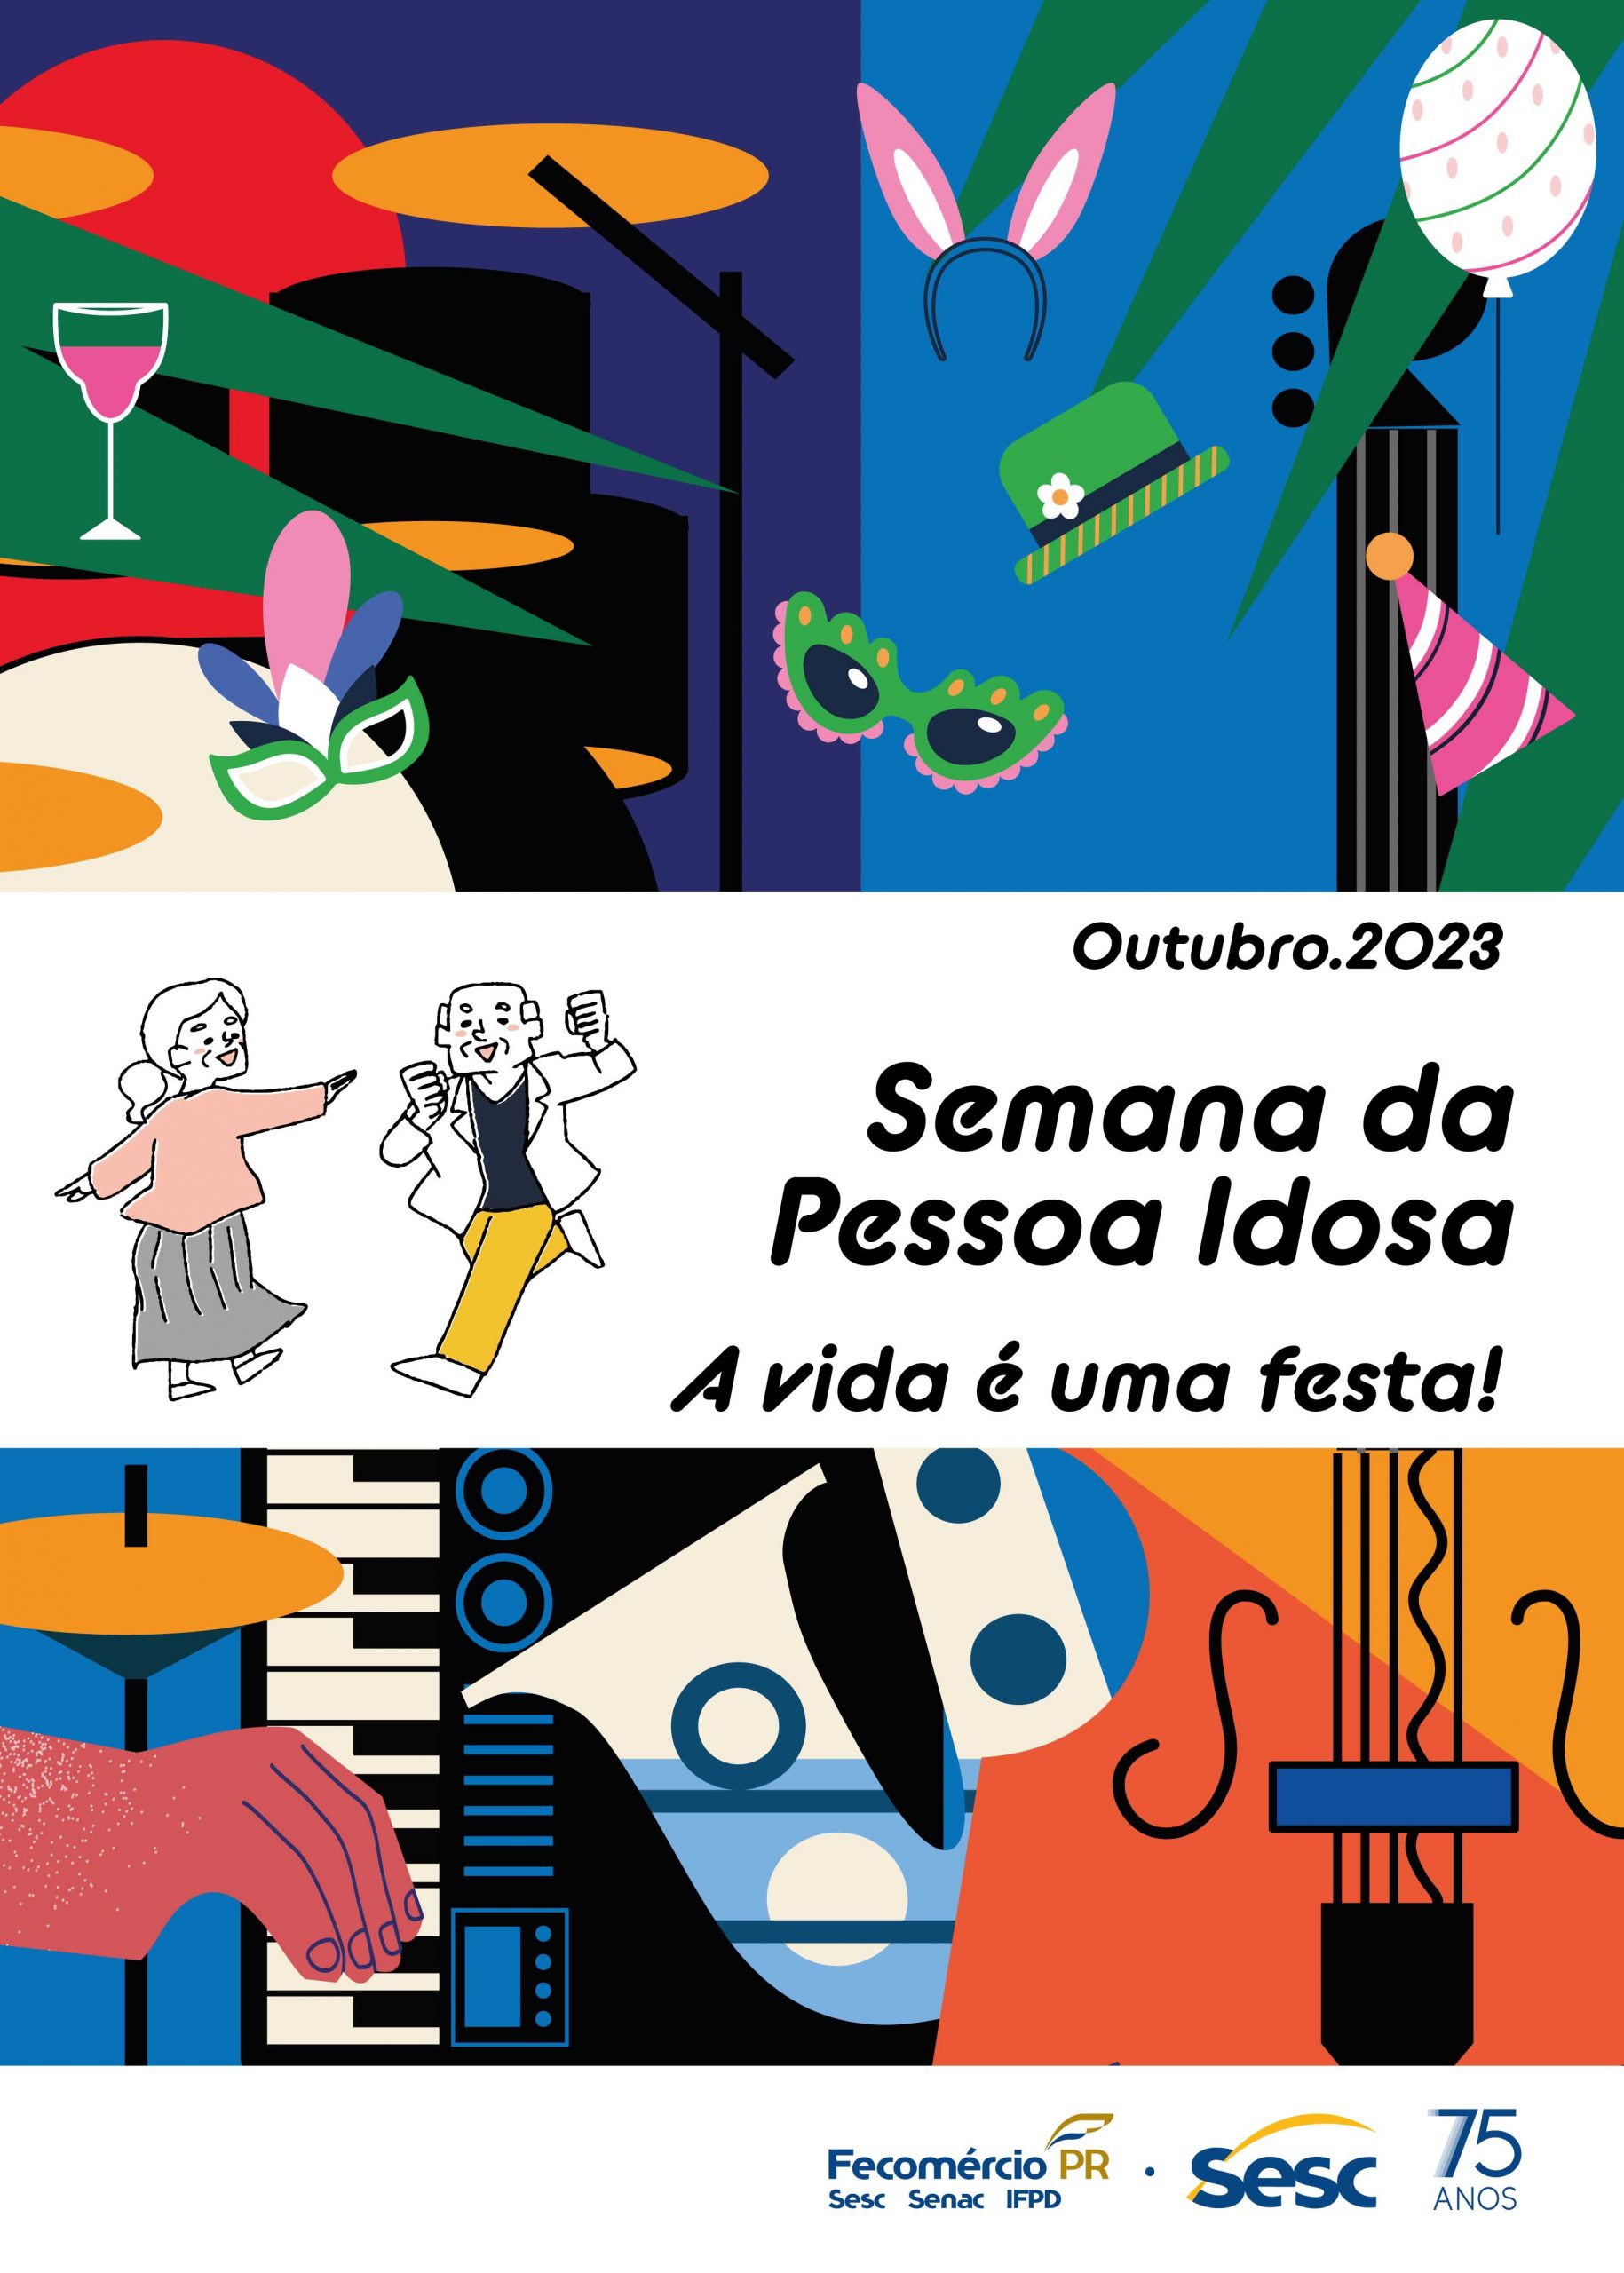 Sesc PR promove 12ª Edição do Encontro Paranaense 60+ em Matinhos –  Fecomércio PR